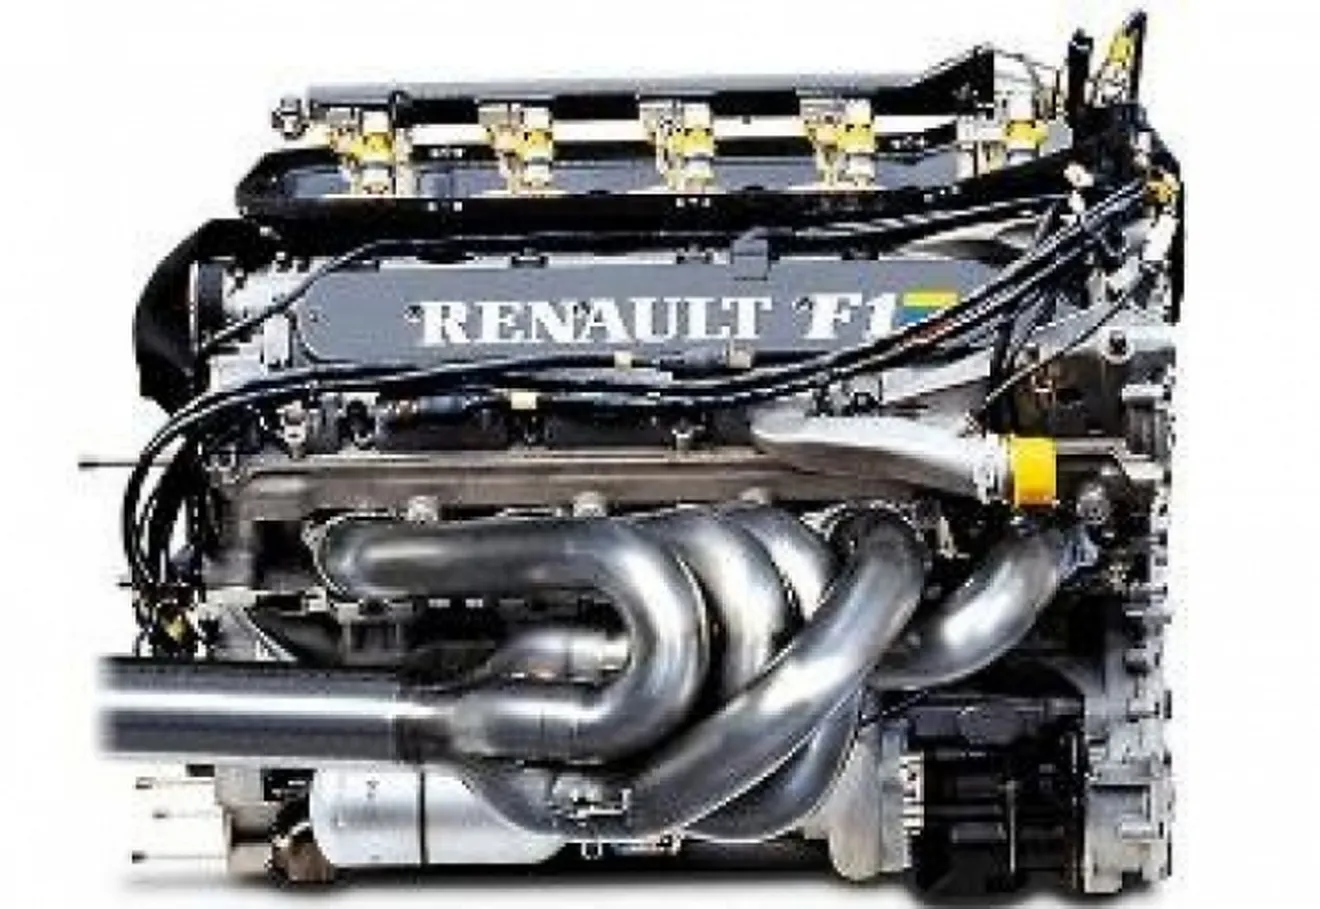 Renault amenaza con irse de la Fórmula 1